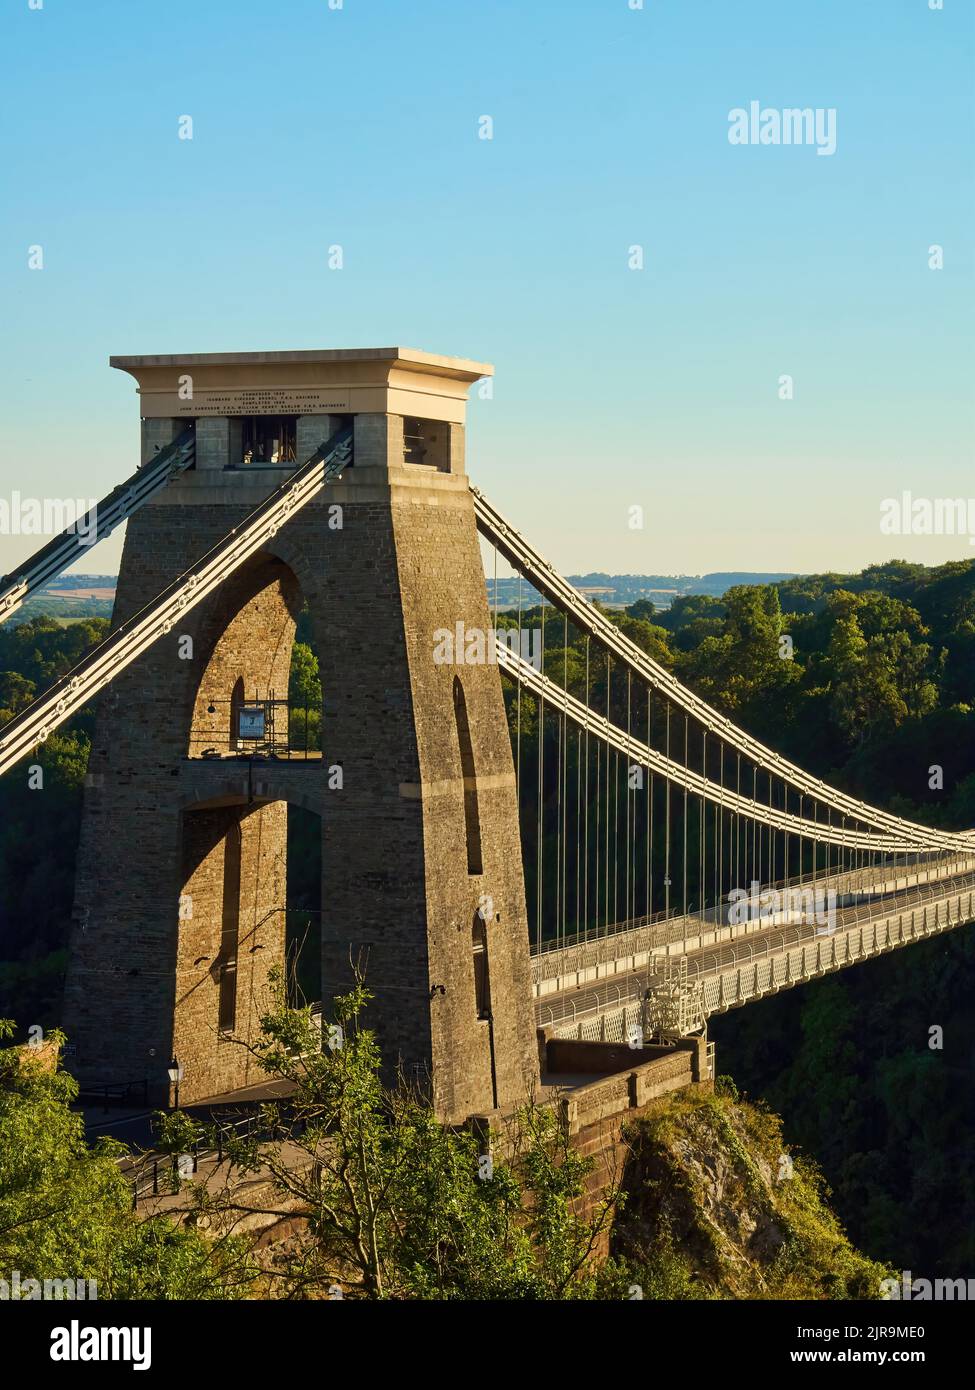 Le célèbre pont suspendu de Clifton à Bristol est baigné d'un éclairage latéral spectaculaire sous un soleil d'été. Banque D'Images